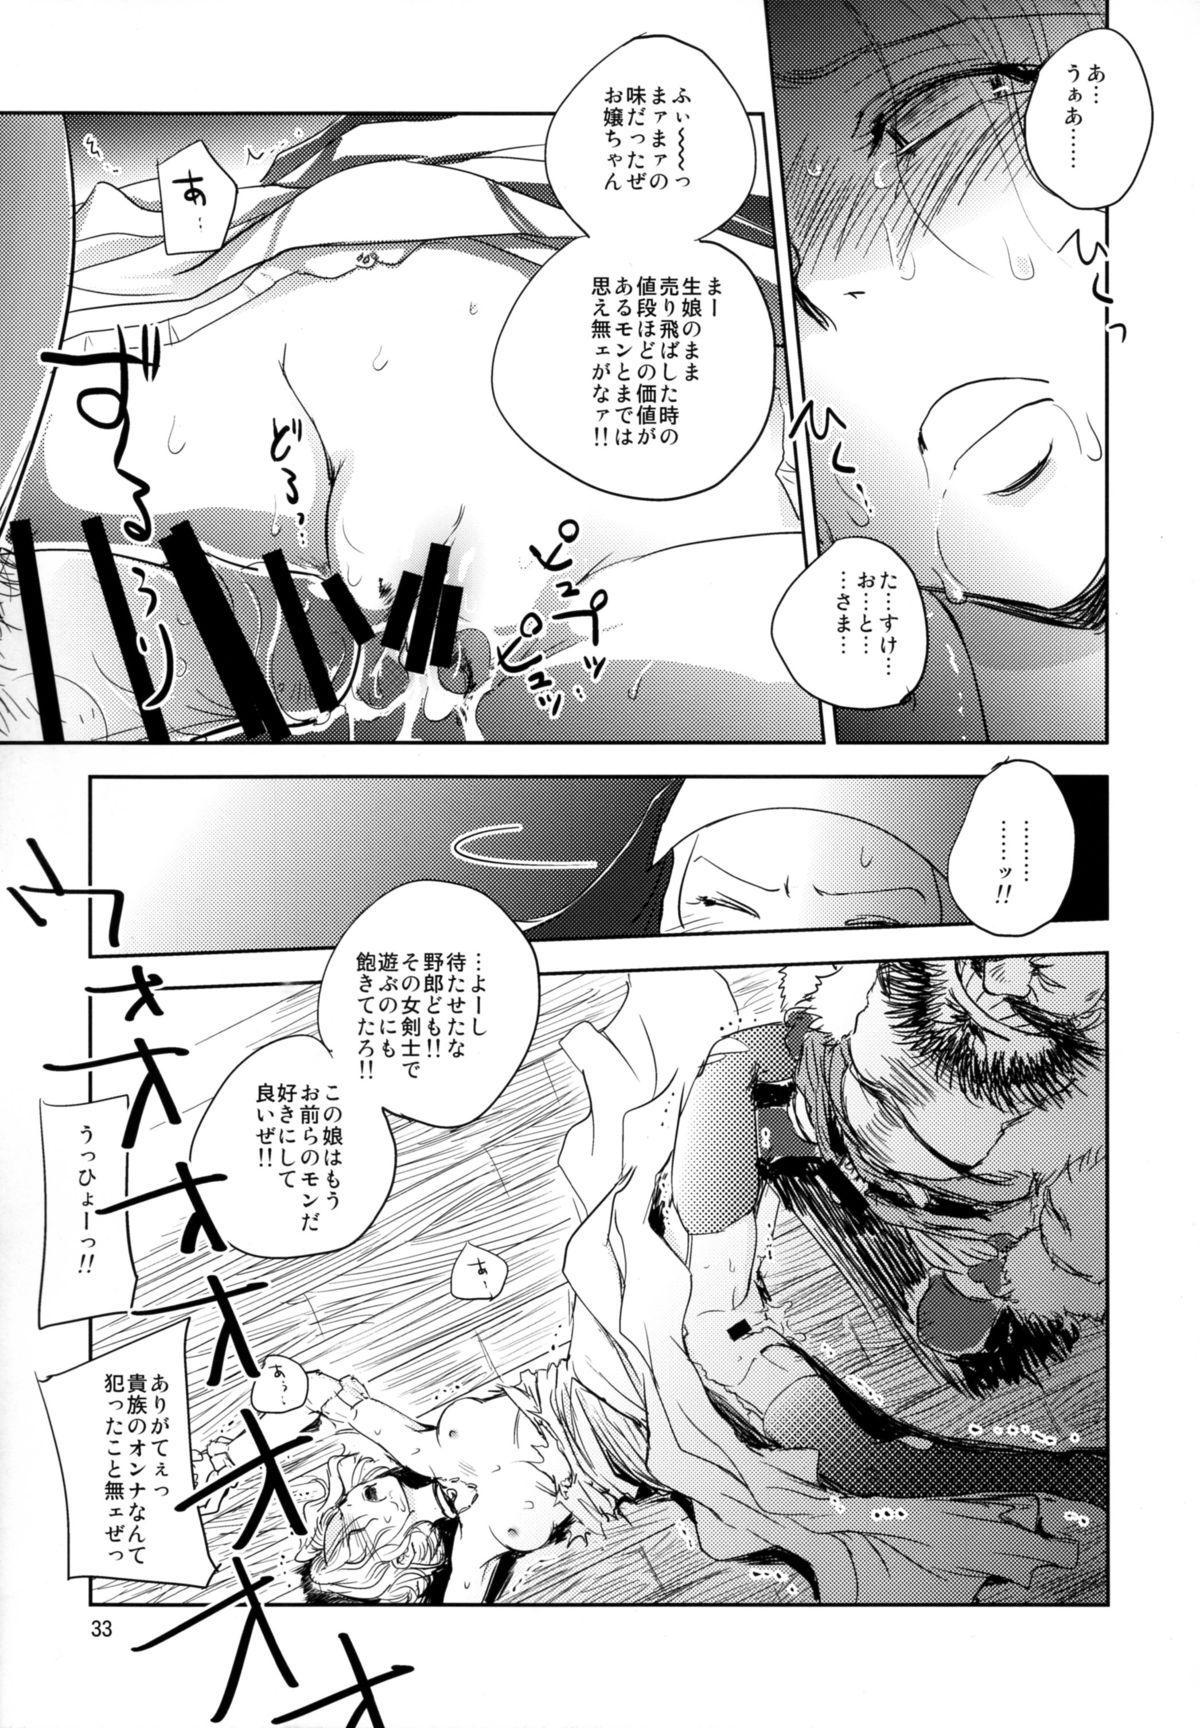 GRASSEN'S WAR ANOTHER STORY Ex #05 Node Shinkou V 32